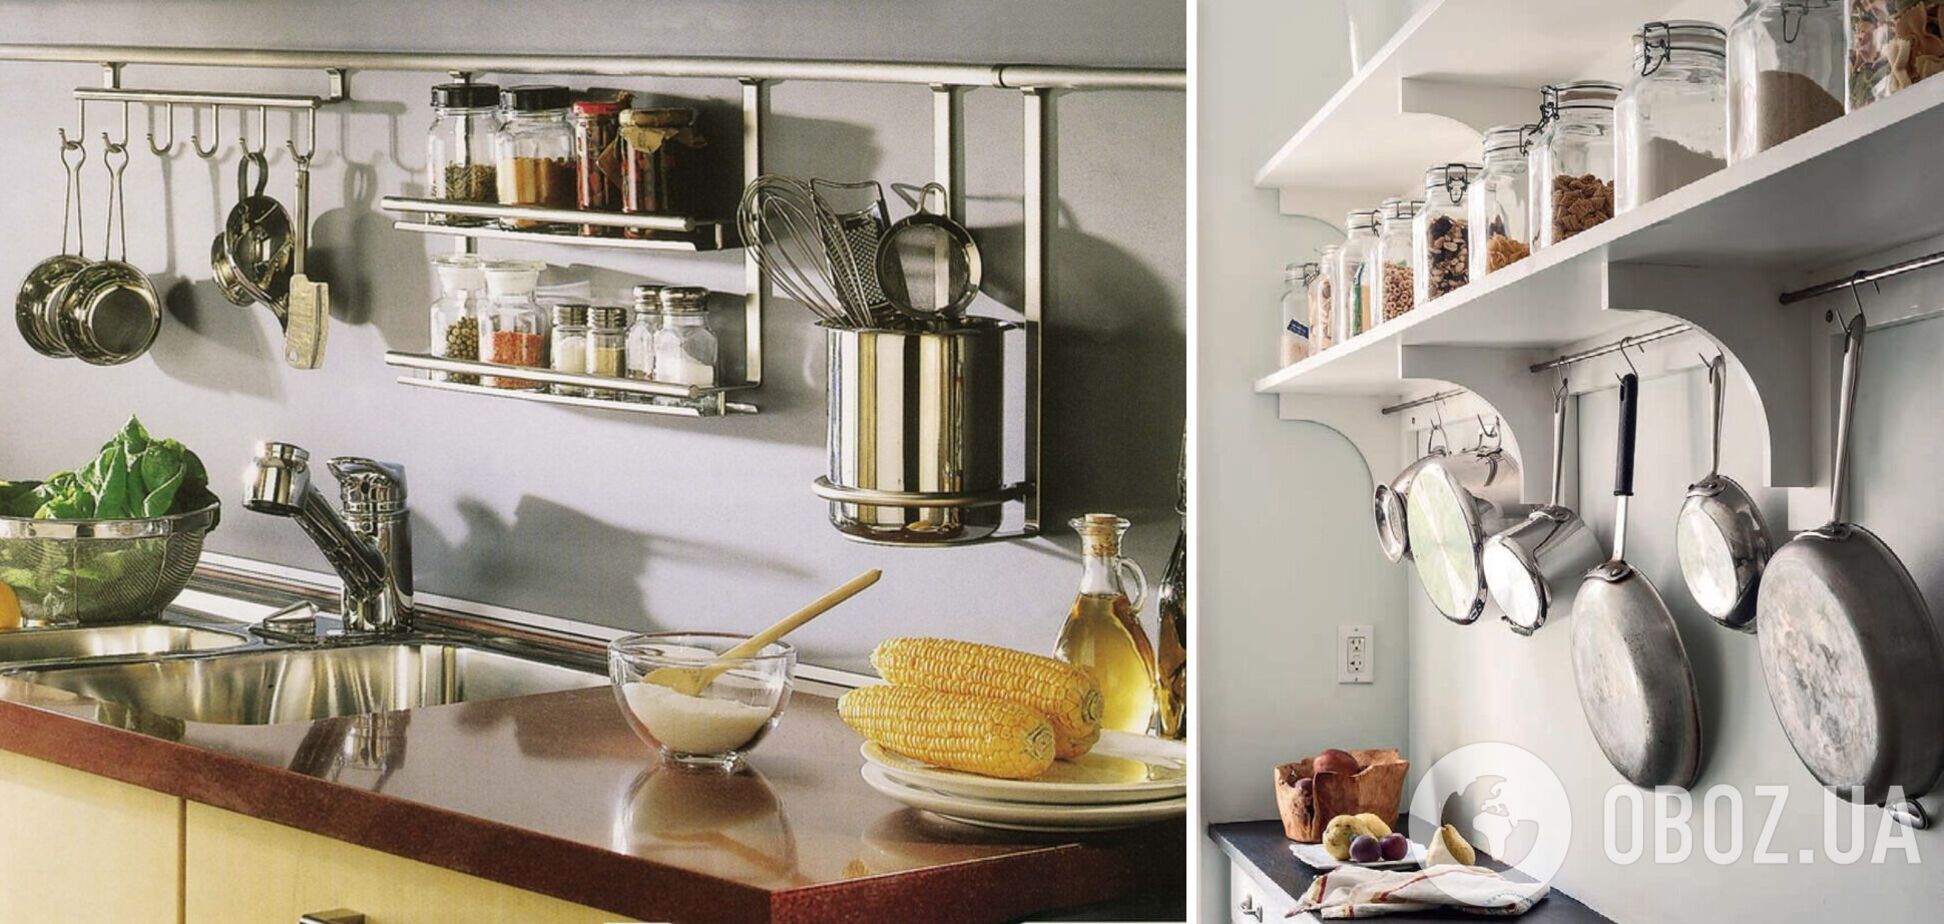 Як заощадити місце в кухонних шафах: 3 простих лайфхаки